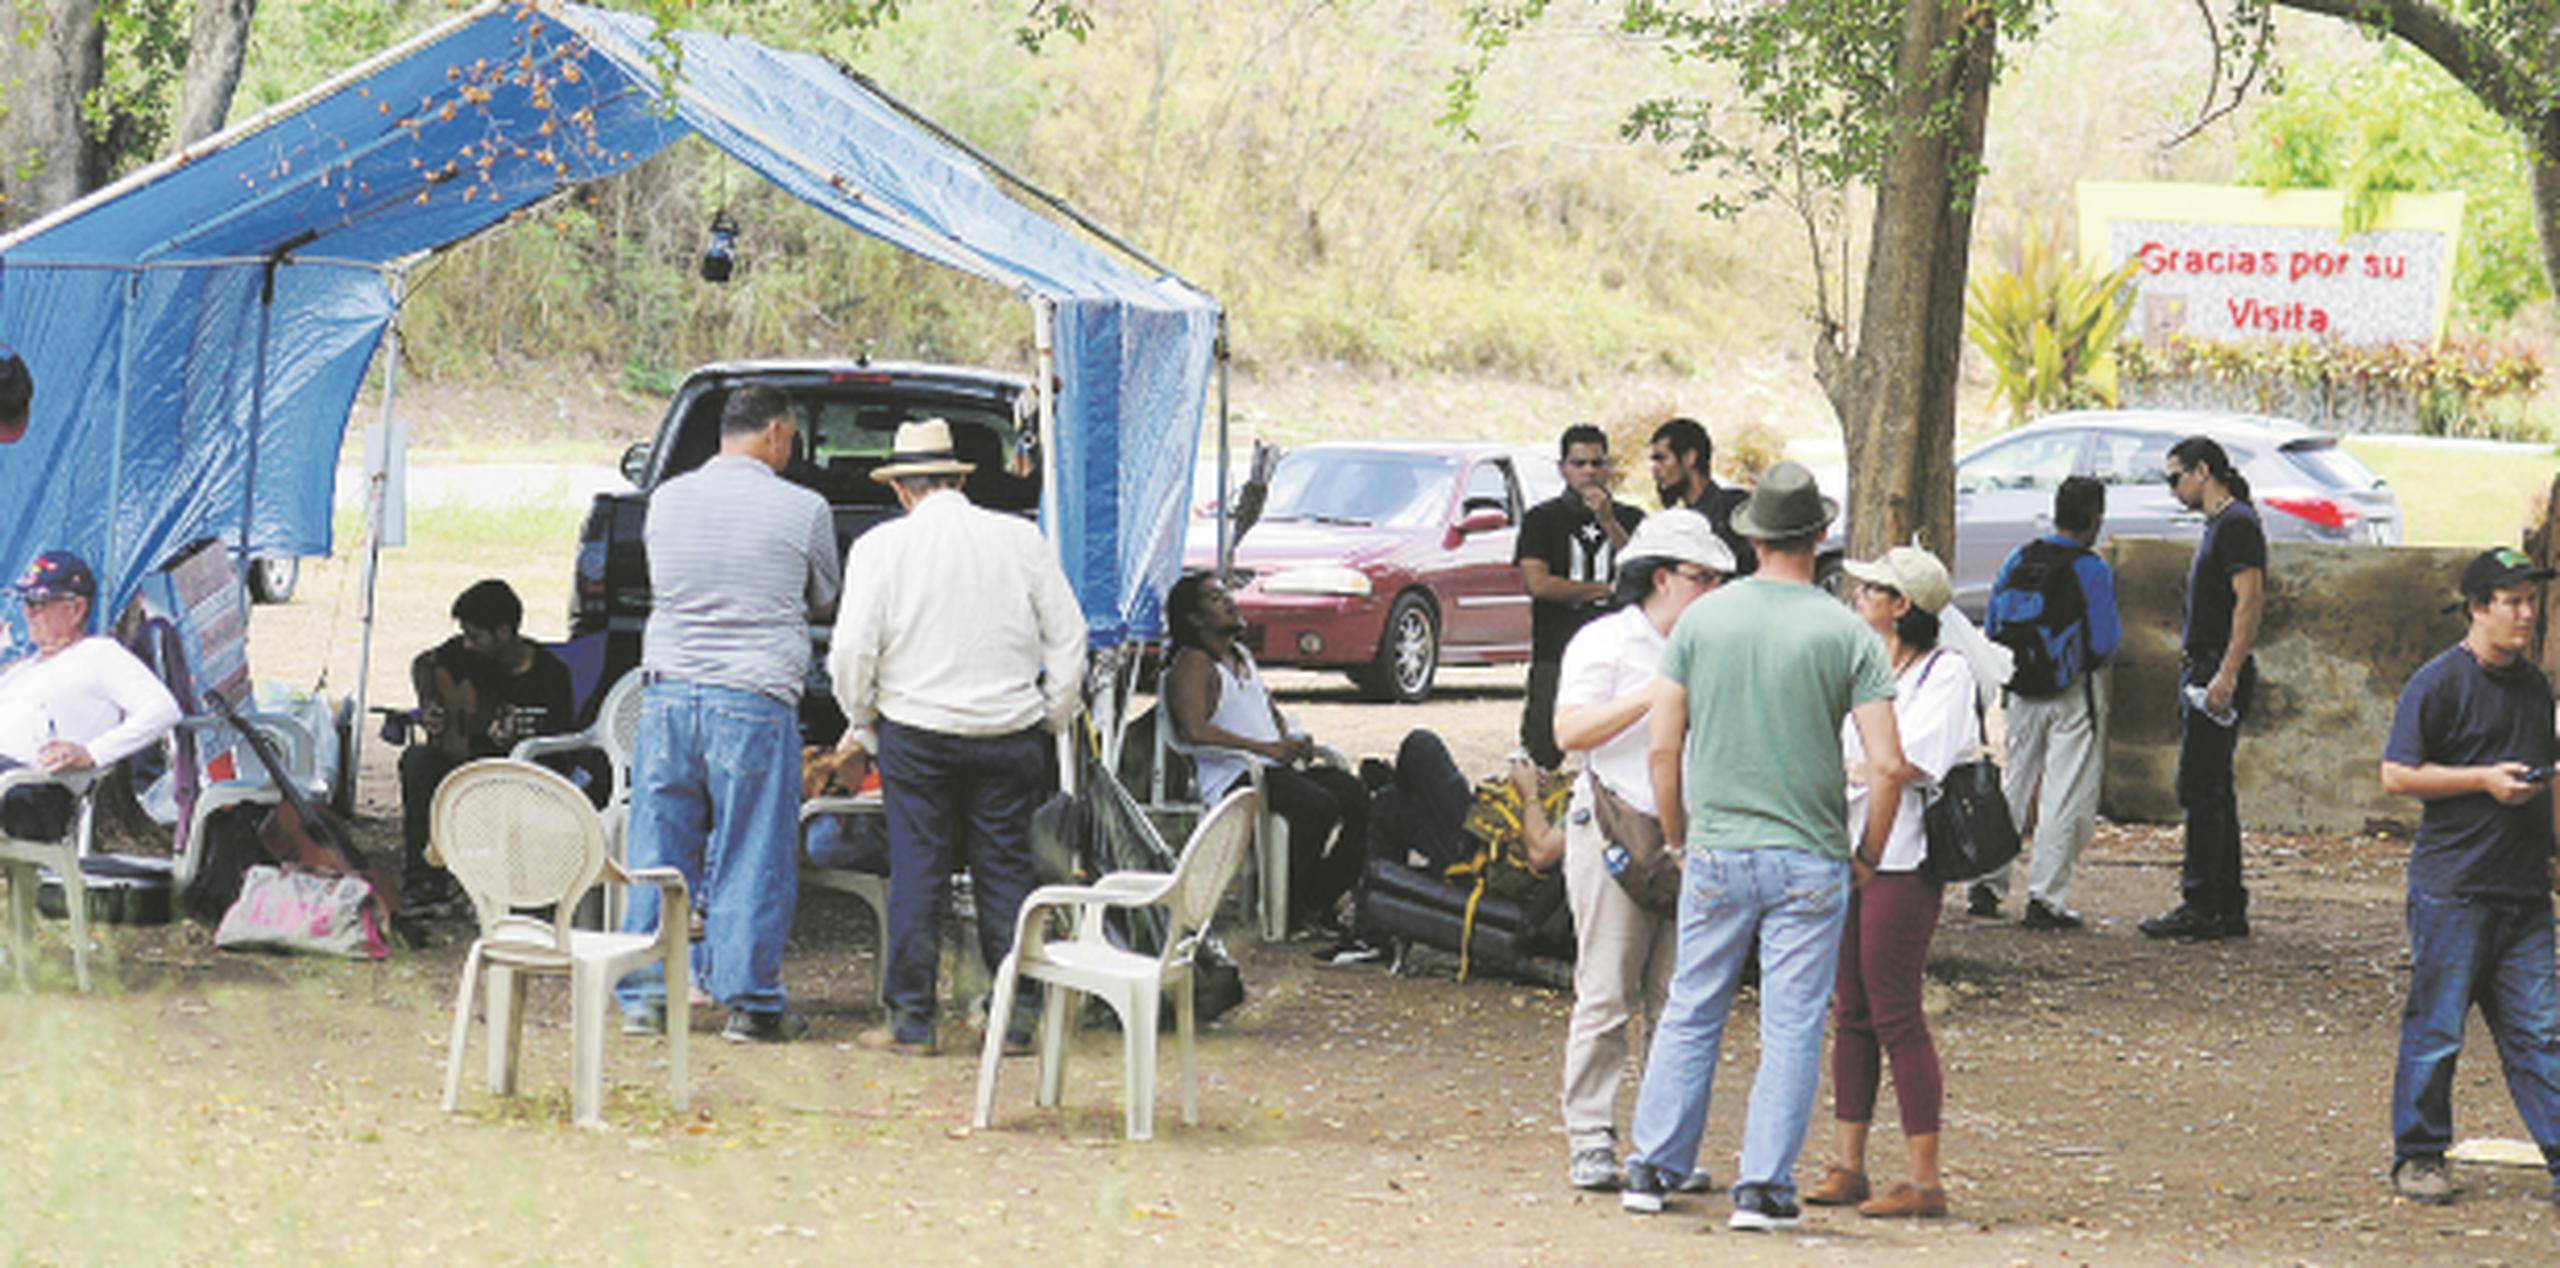 El exprisionero político, Oscar López Rivera, llegó hasta el campamento ayer en solidaridad con la lucha comunitaria. (Archivo)